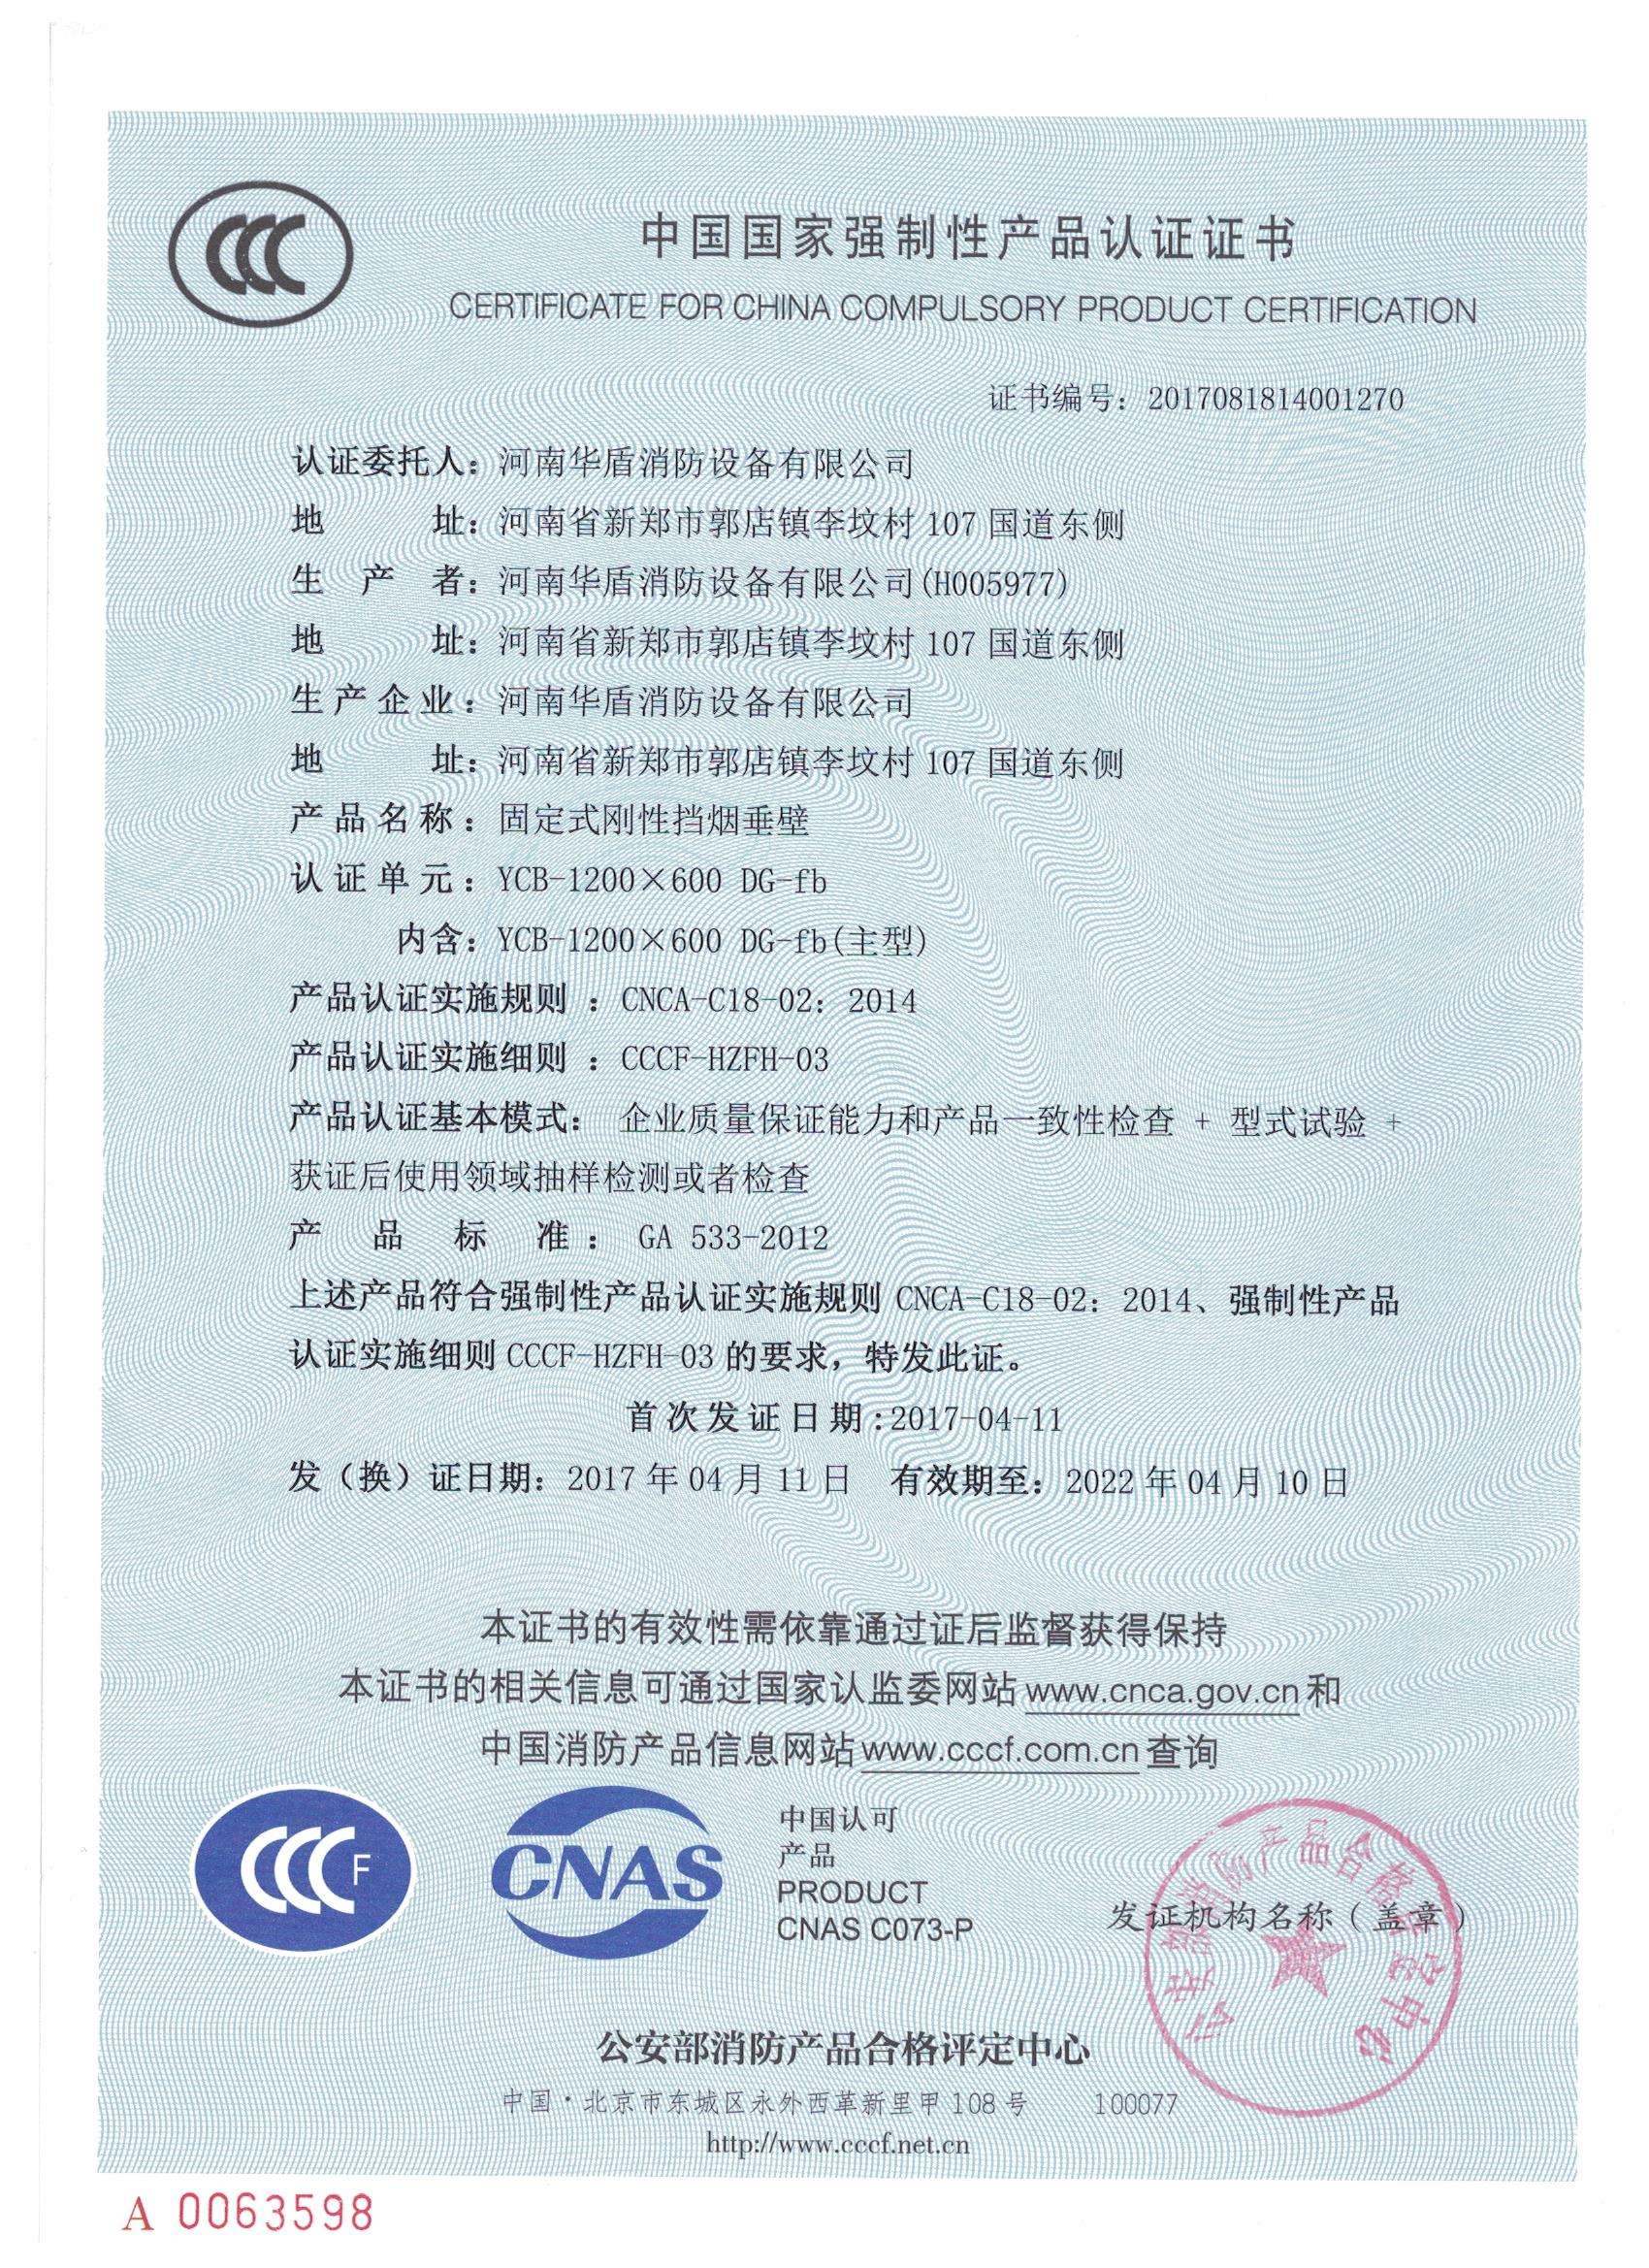 南阳YCB-1200X600 DG-fb-3C证书